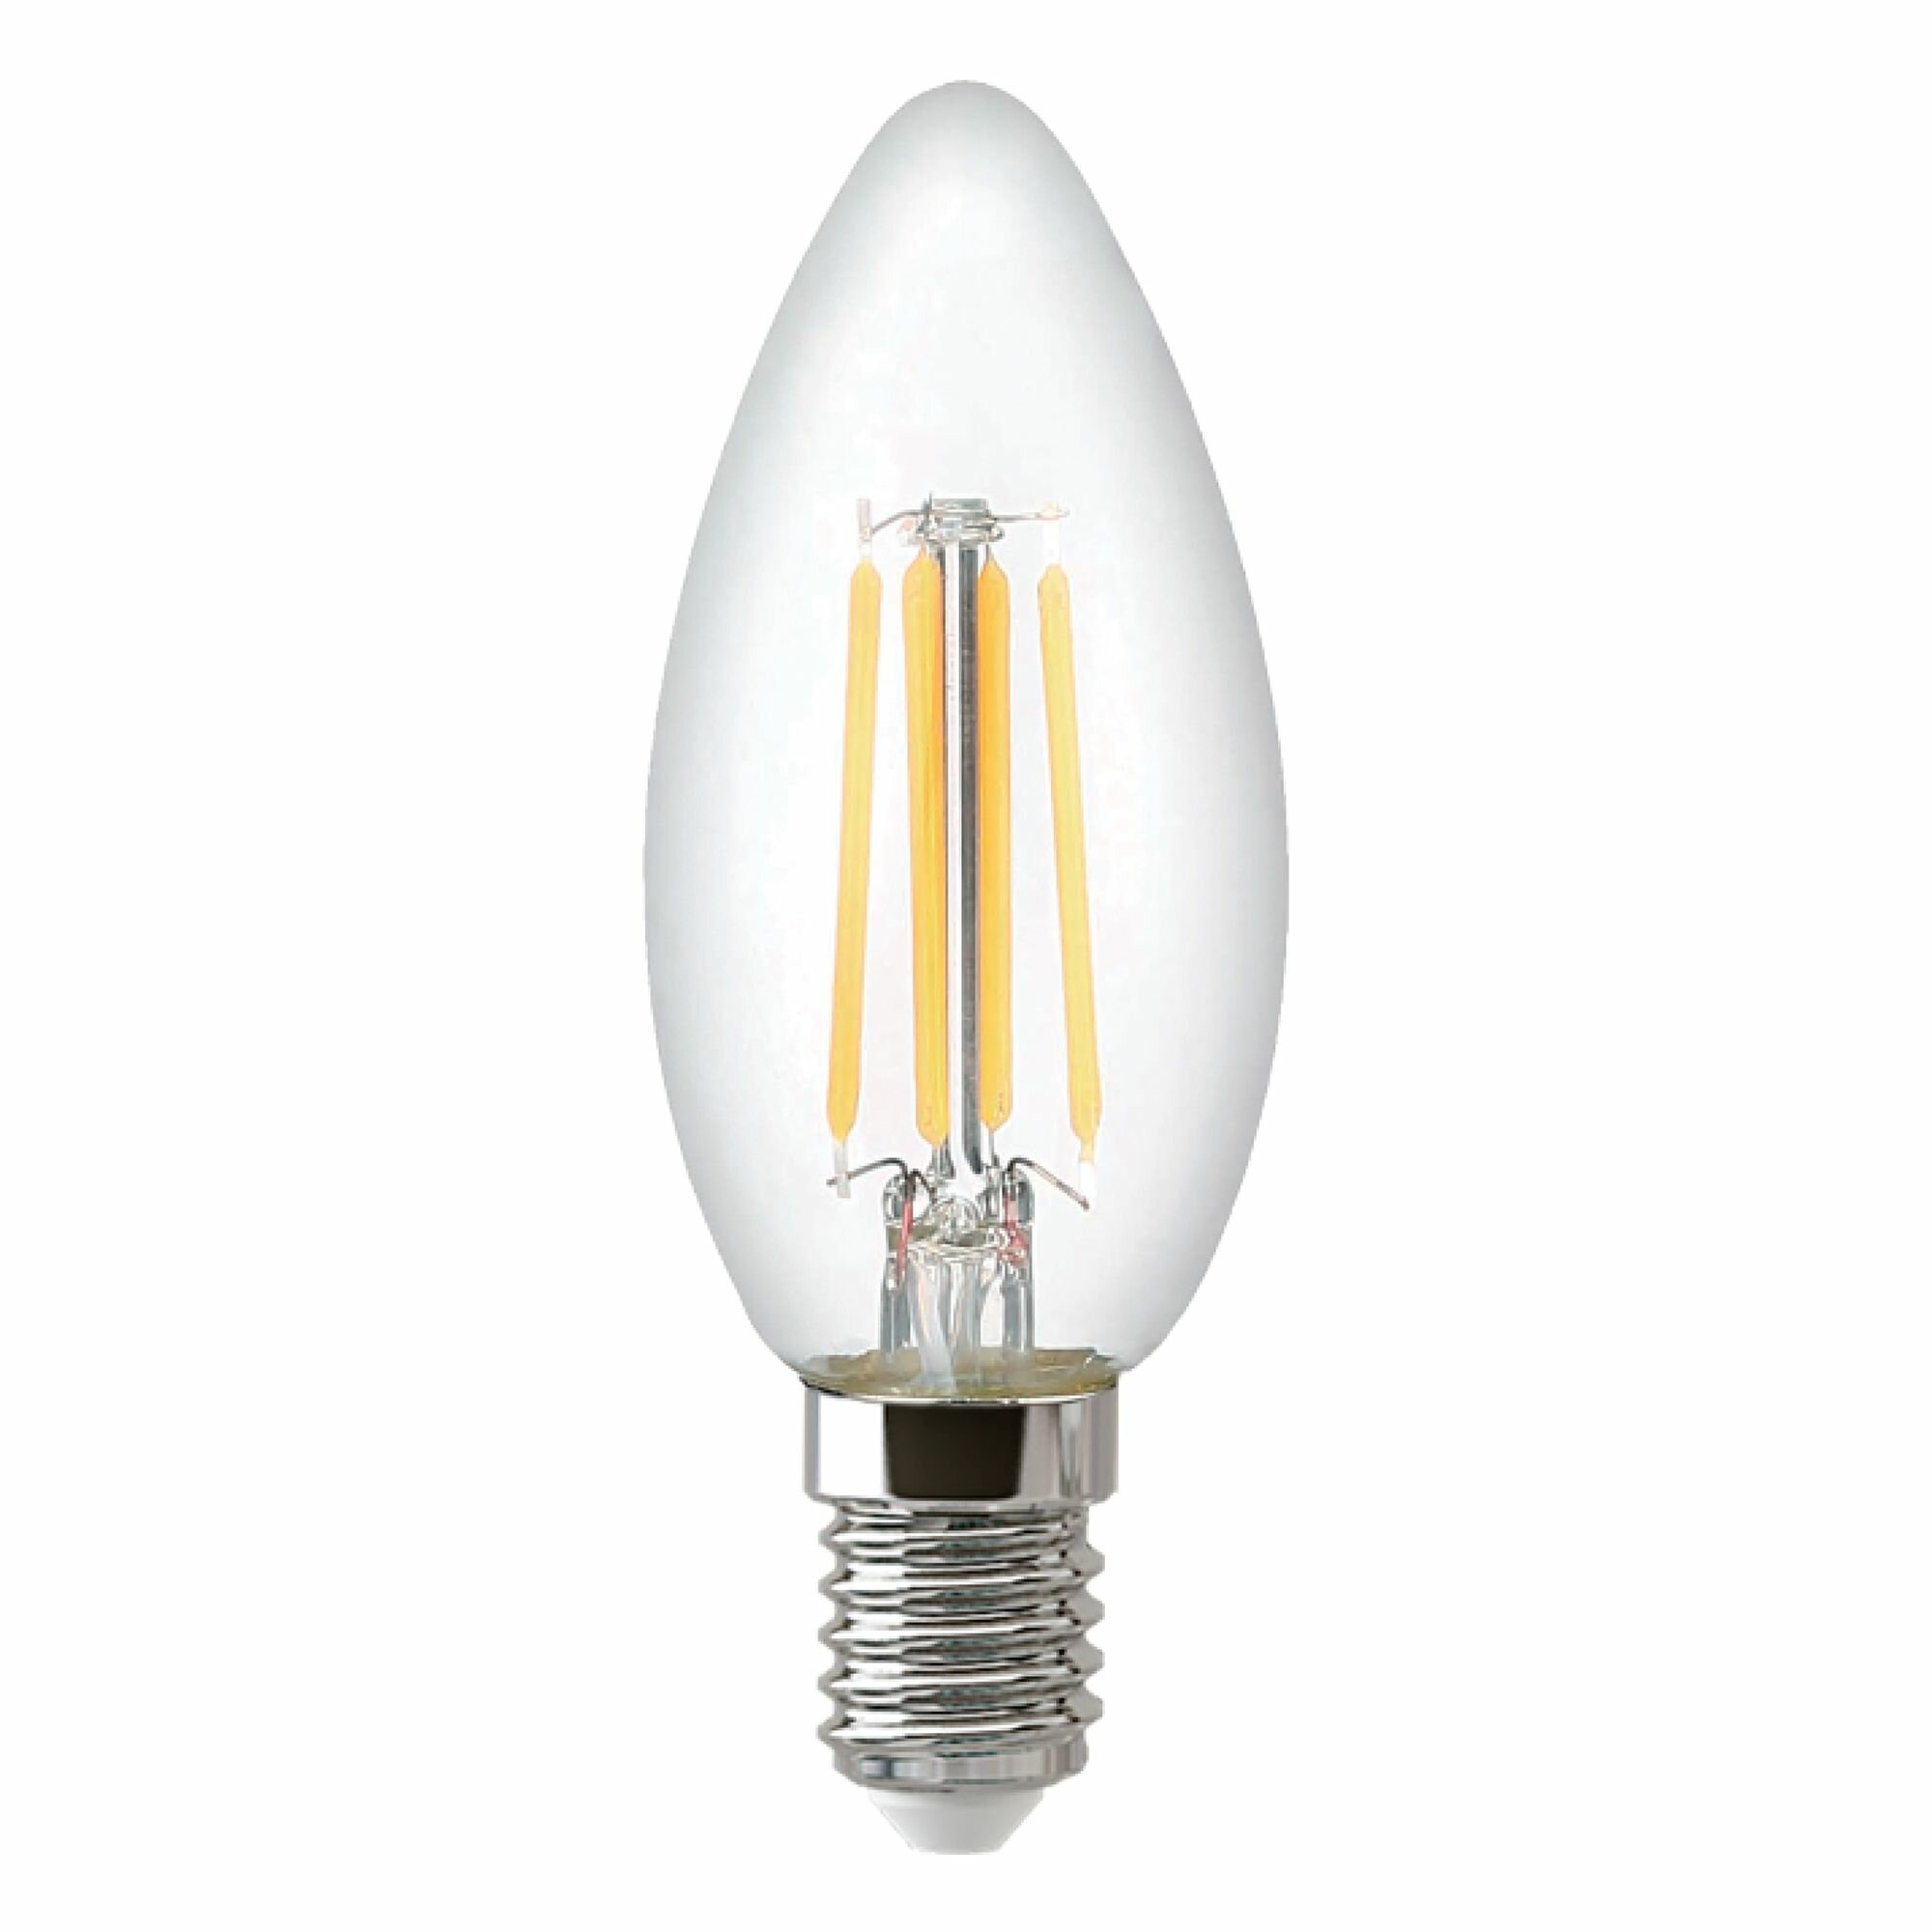 Лампочка Thomson филаментная TH-B2069 9 Вт, E14, 2700K, свеча, теплый белый свет